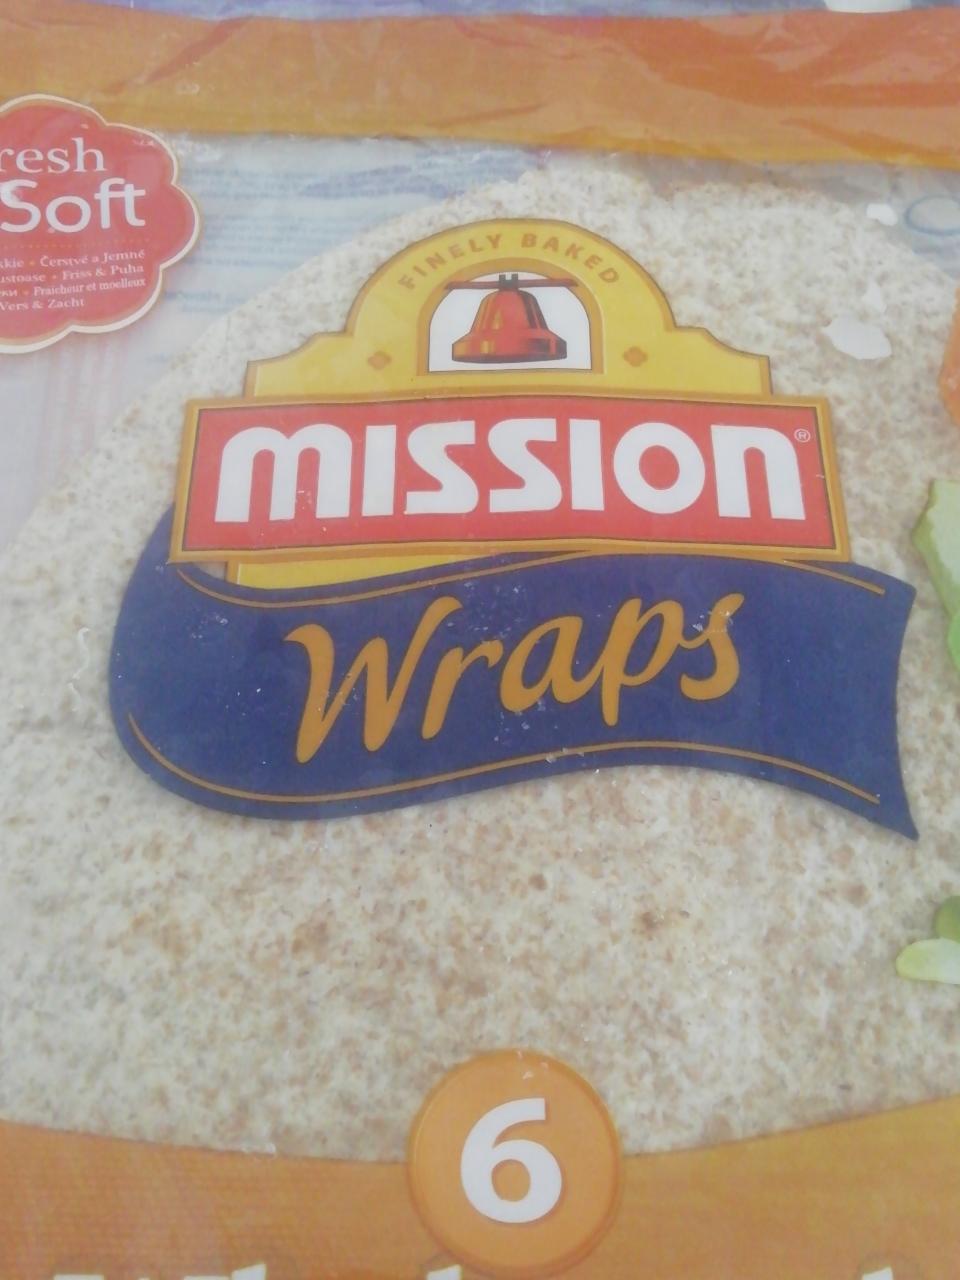 Fotografie - Mission wrap blé complet